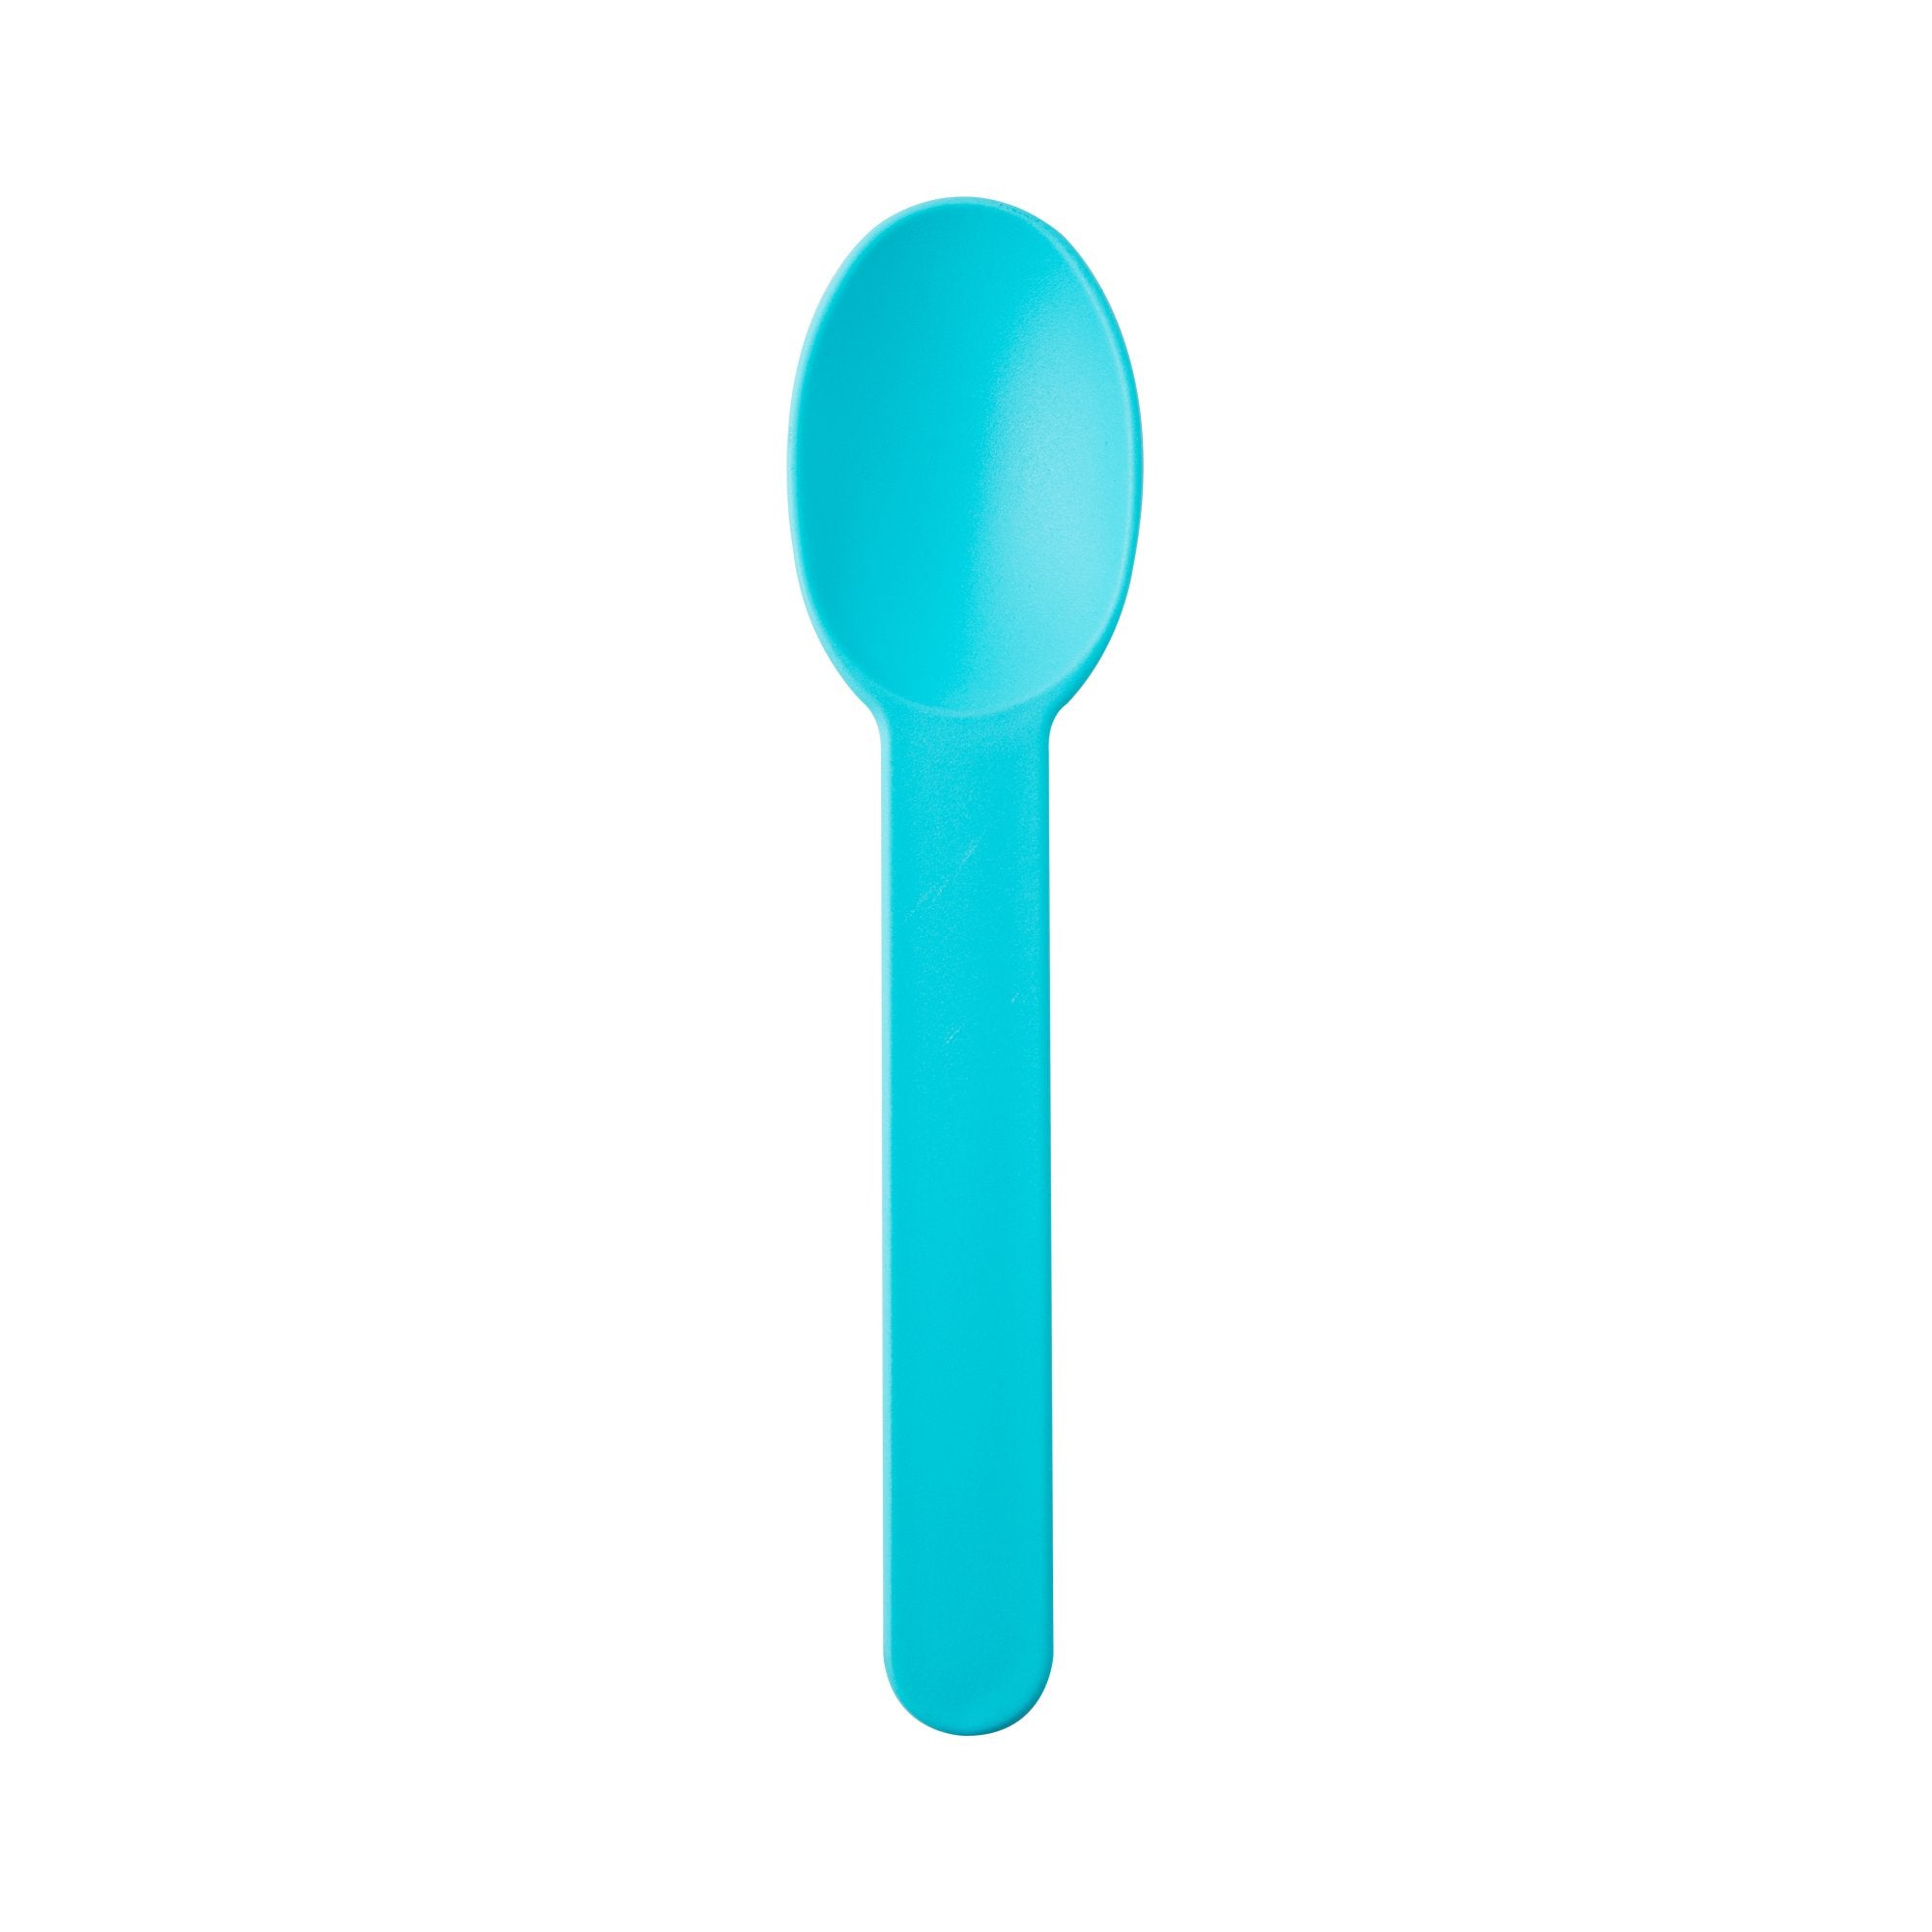 Premium 6.5G PP Plastic Dessert Spoon- Blue (1000/case)